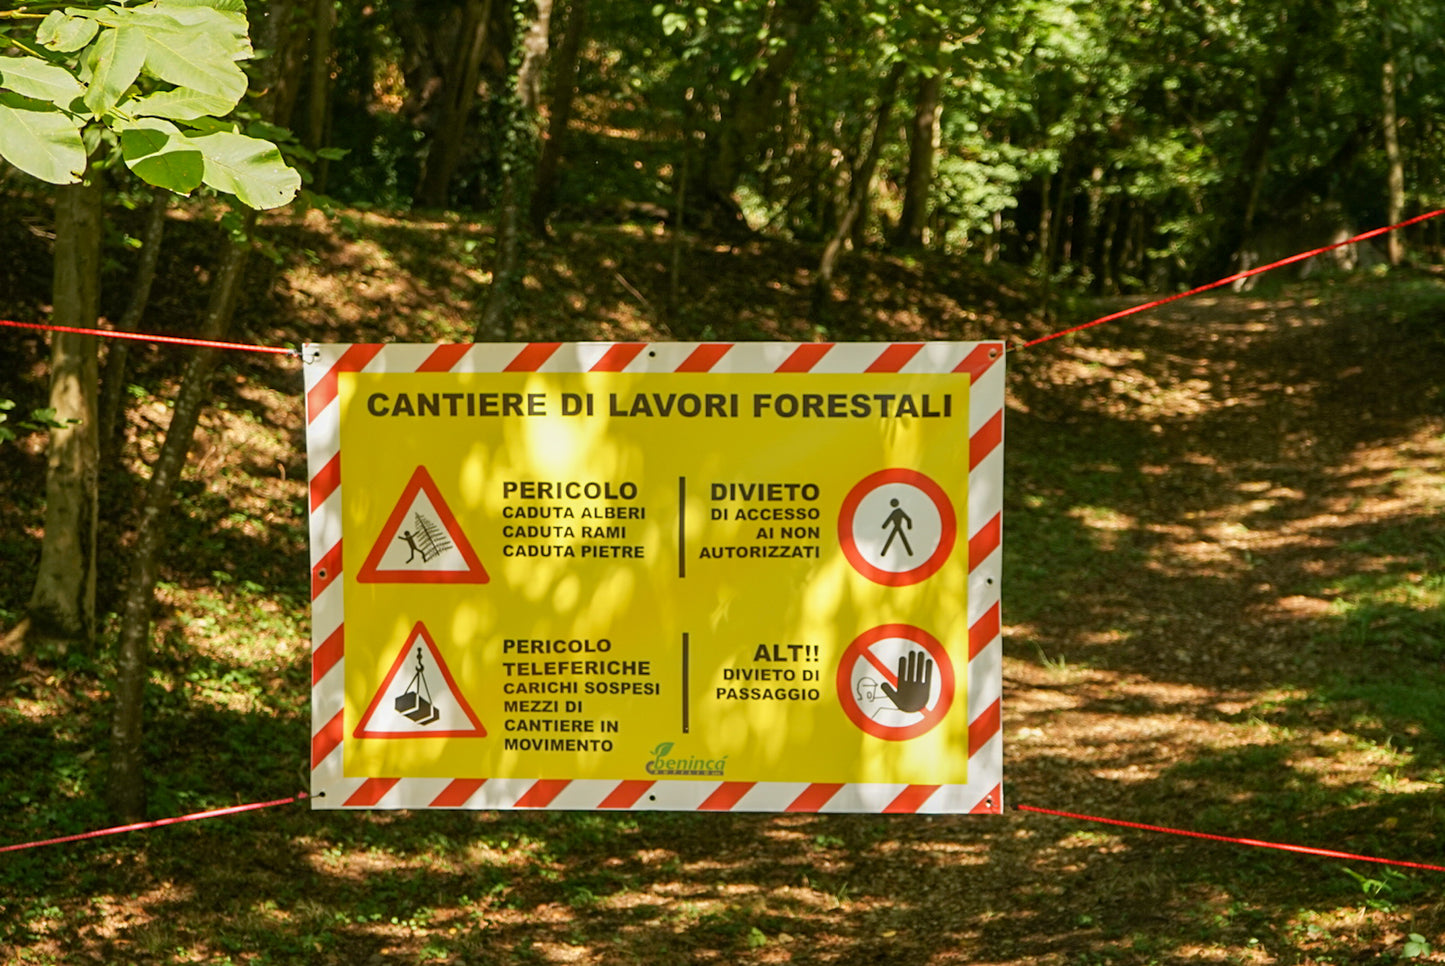 Striscione segnaletico lavori forestali 148x100